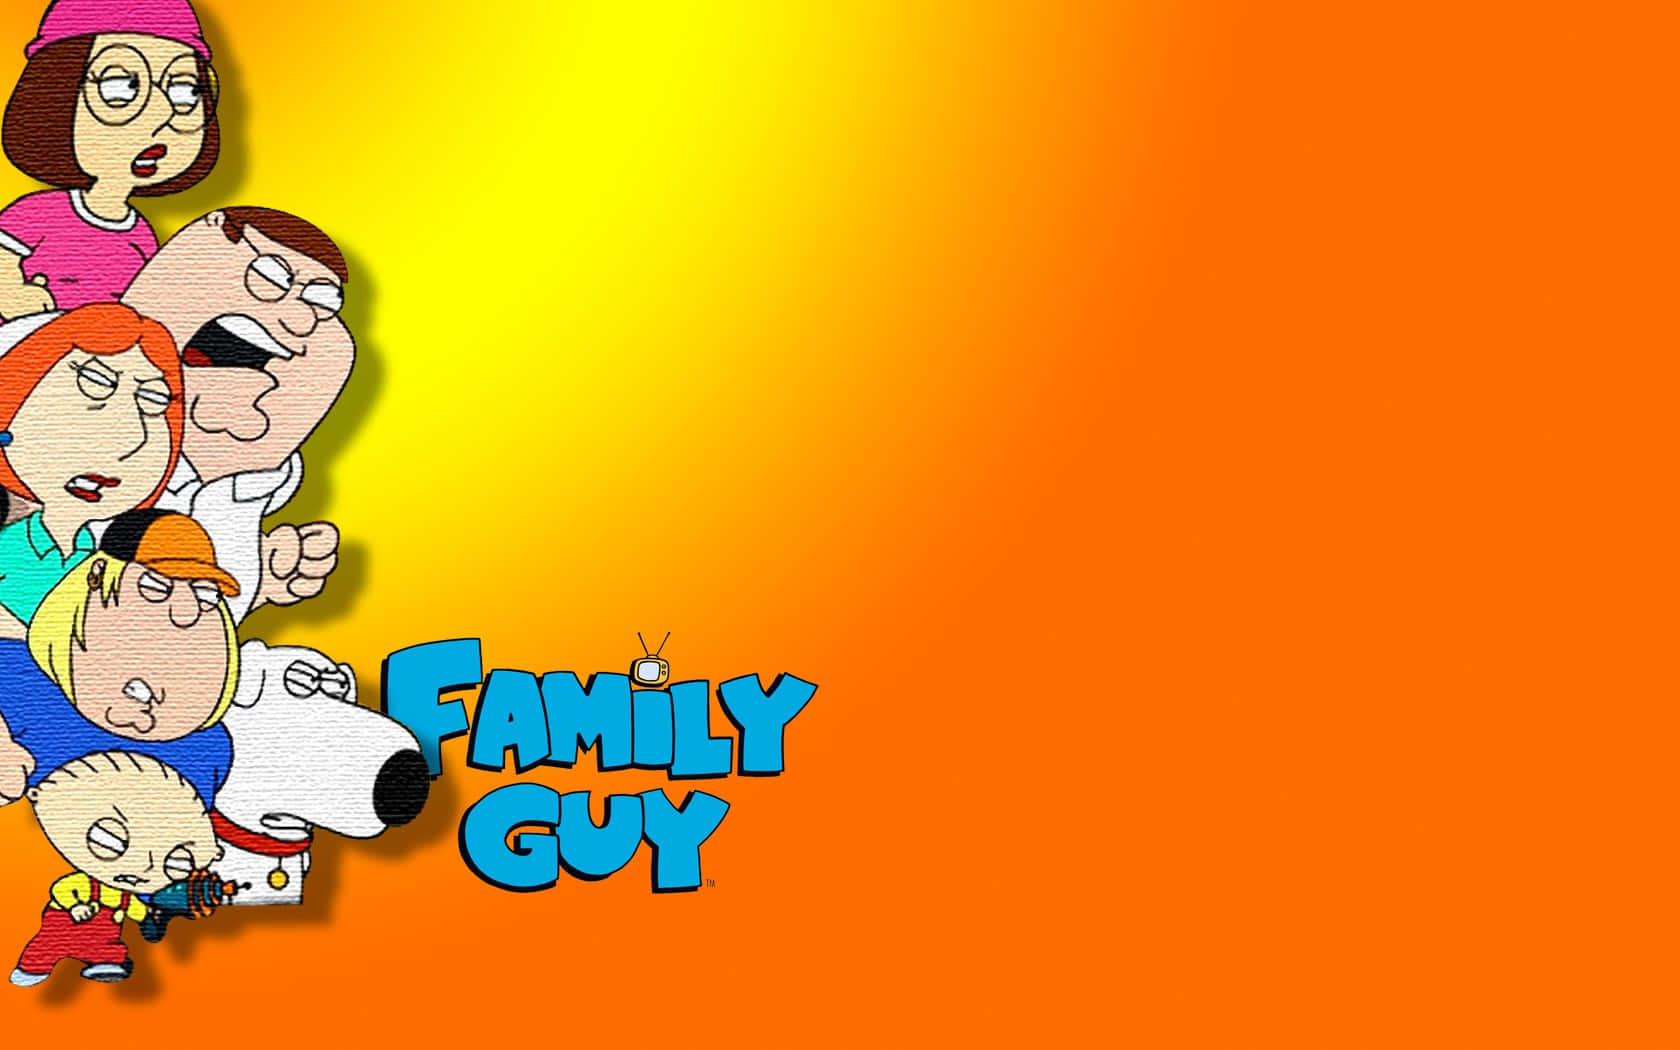 Note Pierdas El Último Episodio De Family Guy El Domingo Por La Noche.